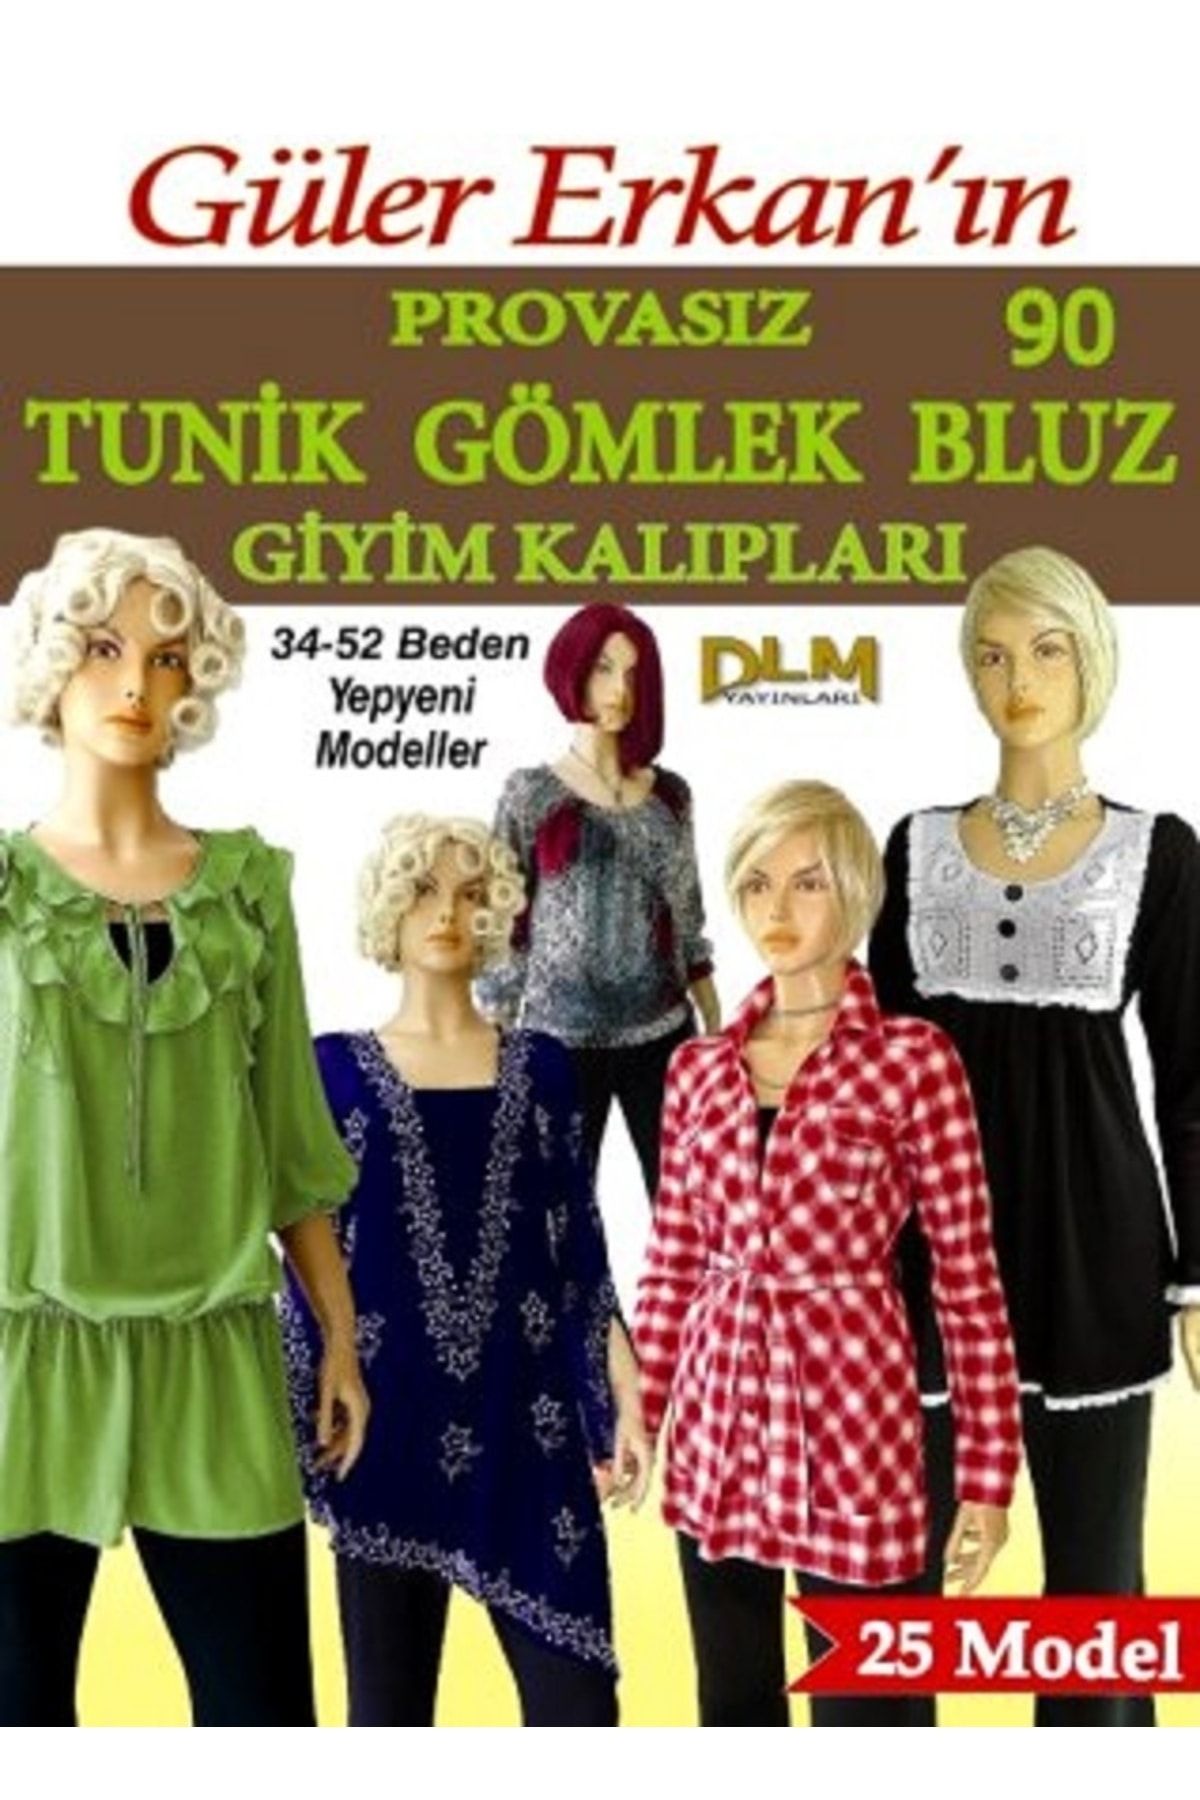 Dilem Yayınları Güler Erkan Tunik Gömlek Bluz Giyim Kalıpları 34-52 Beden No: 90